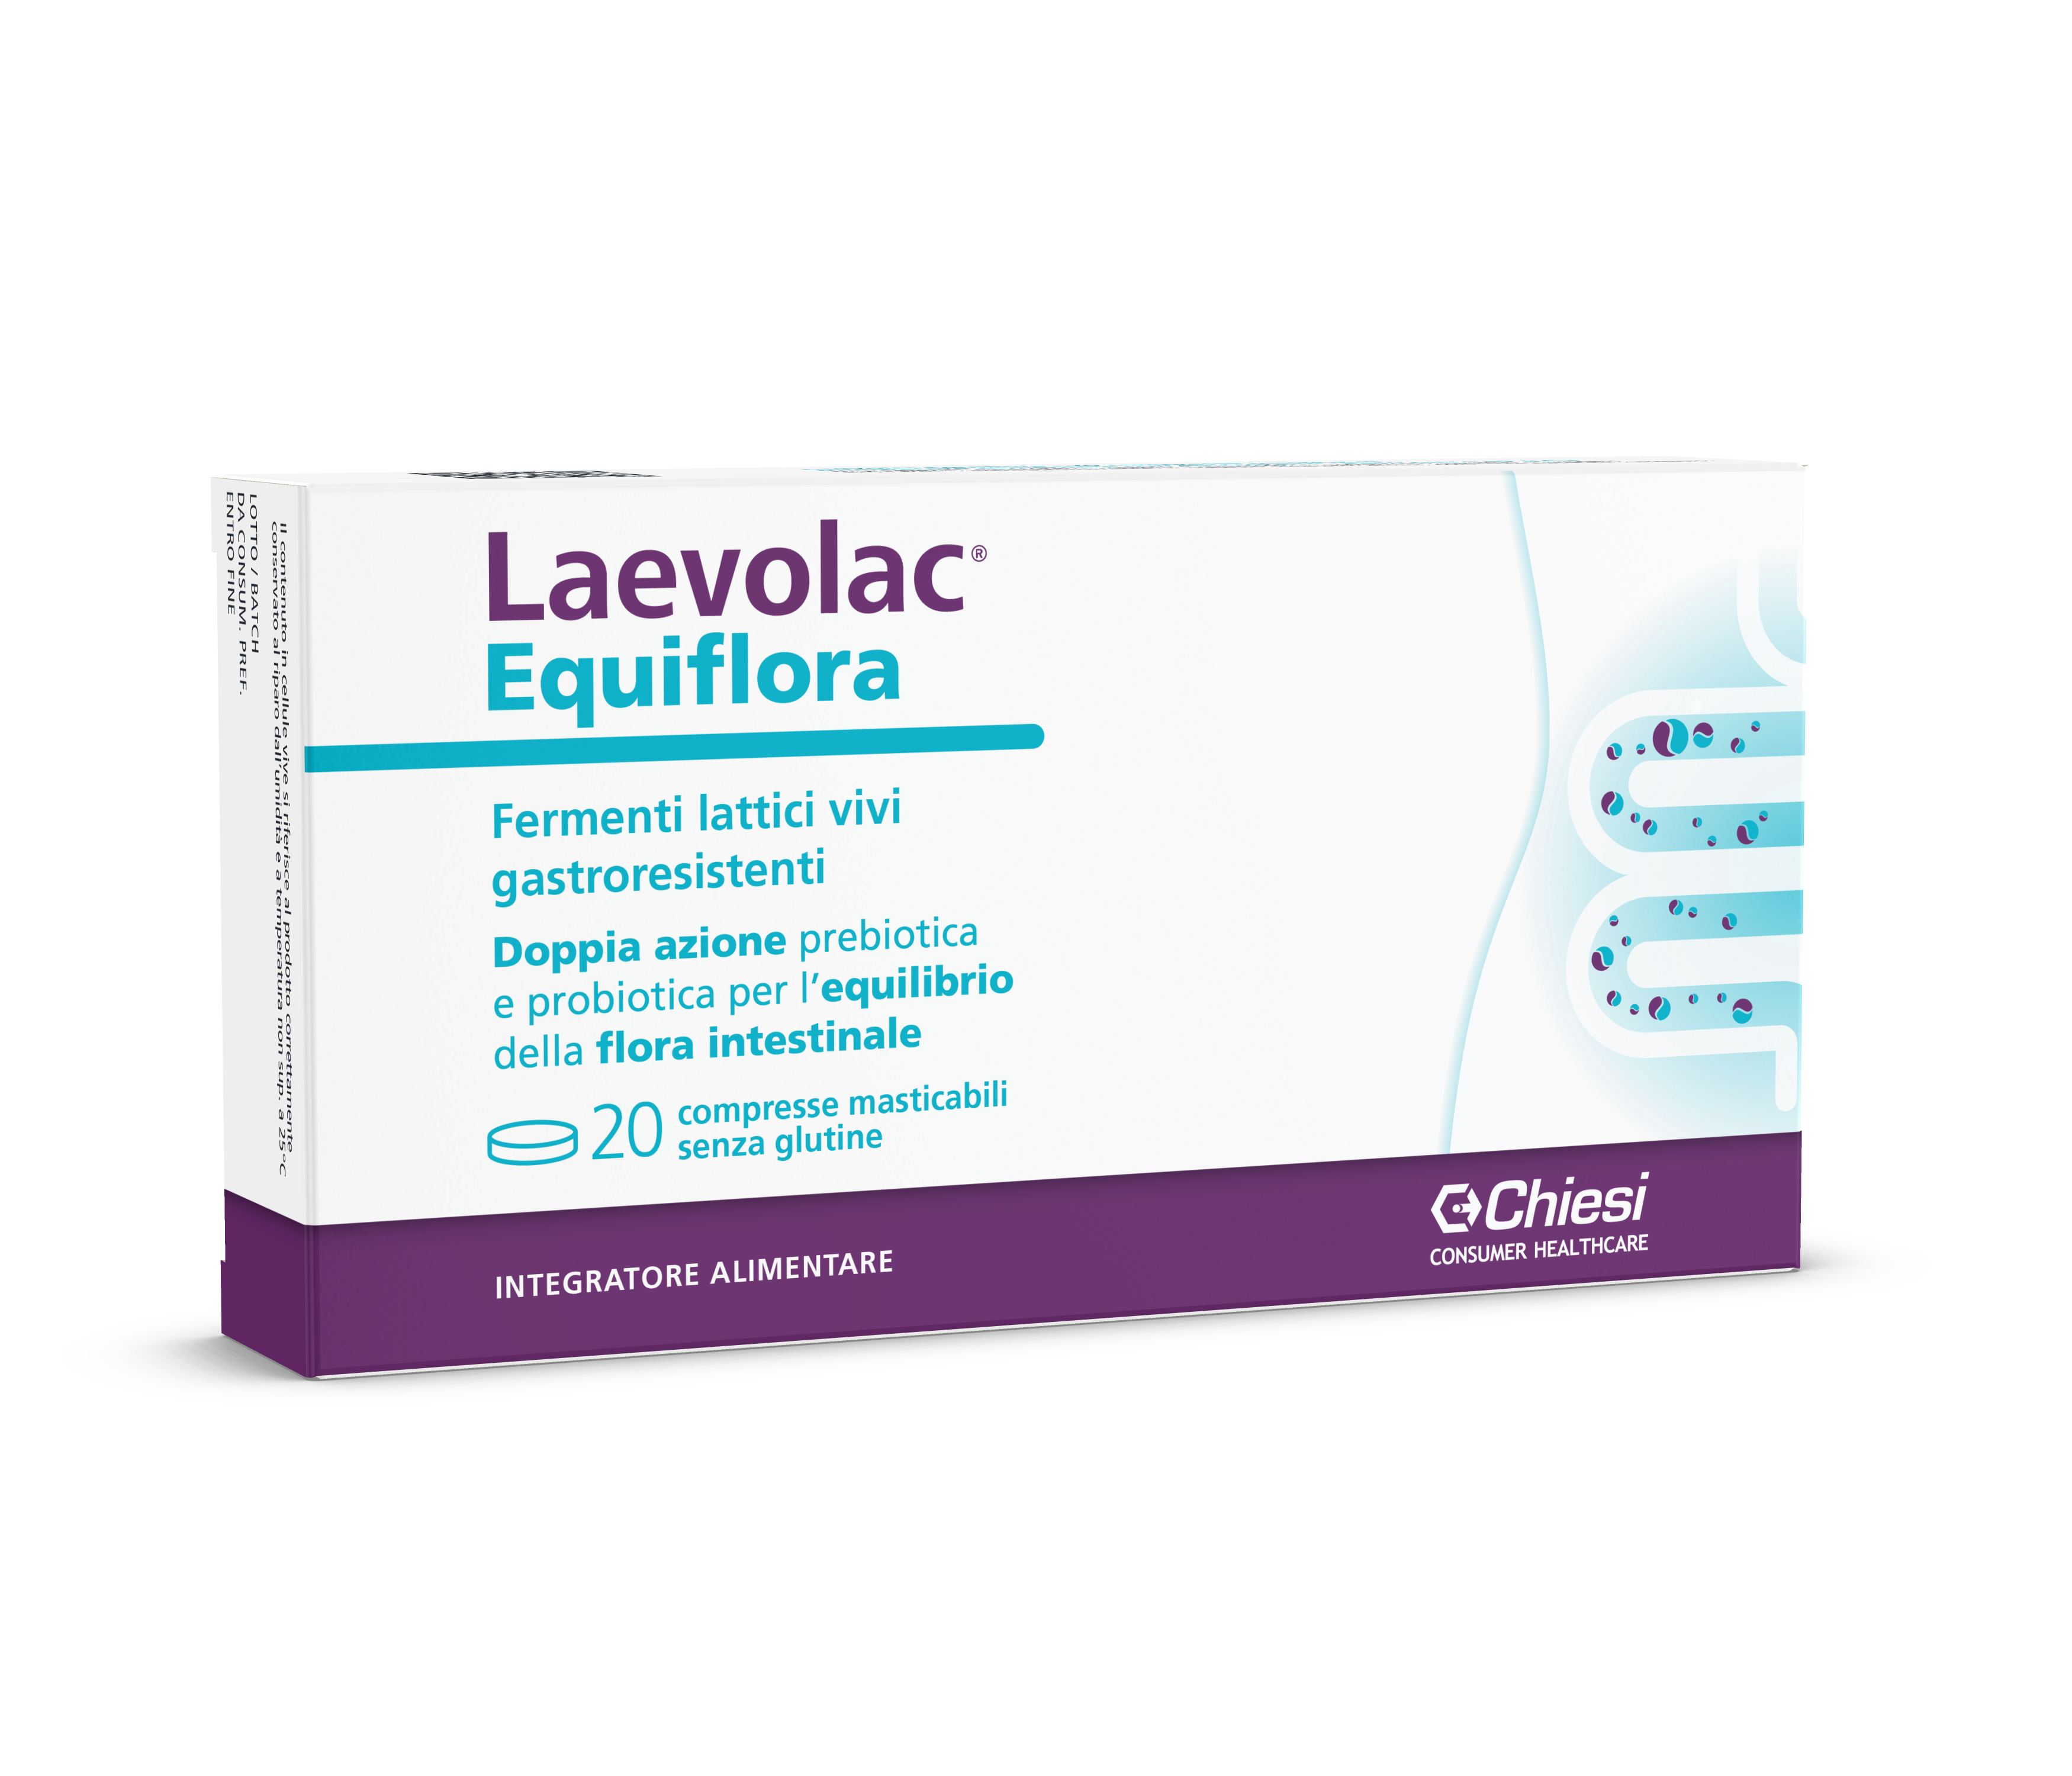 Immagine della confezione di Laevolac Equiflora, integratore di Chiesi Farmaceutici S.p.A.